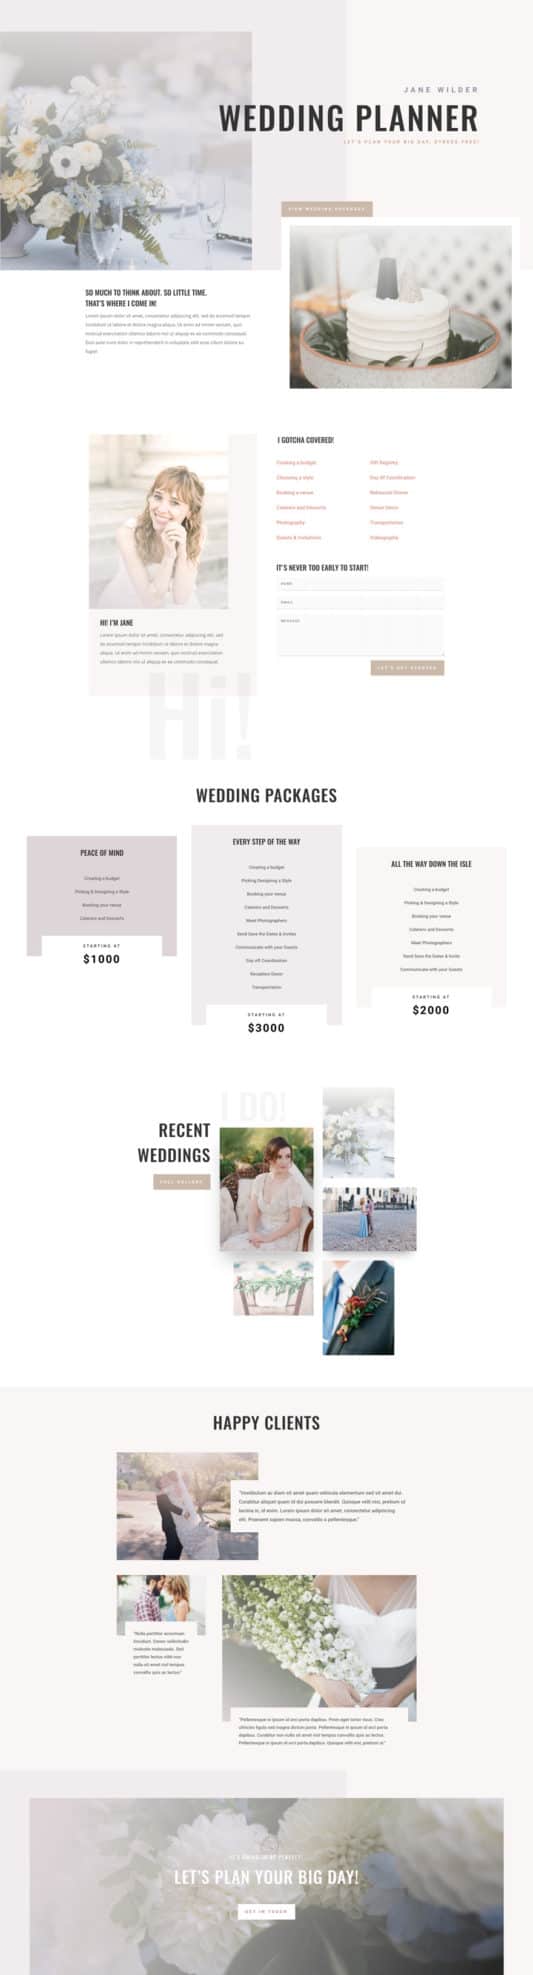 Wedding Planner Web Design 6